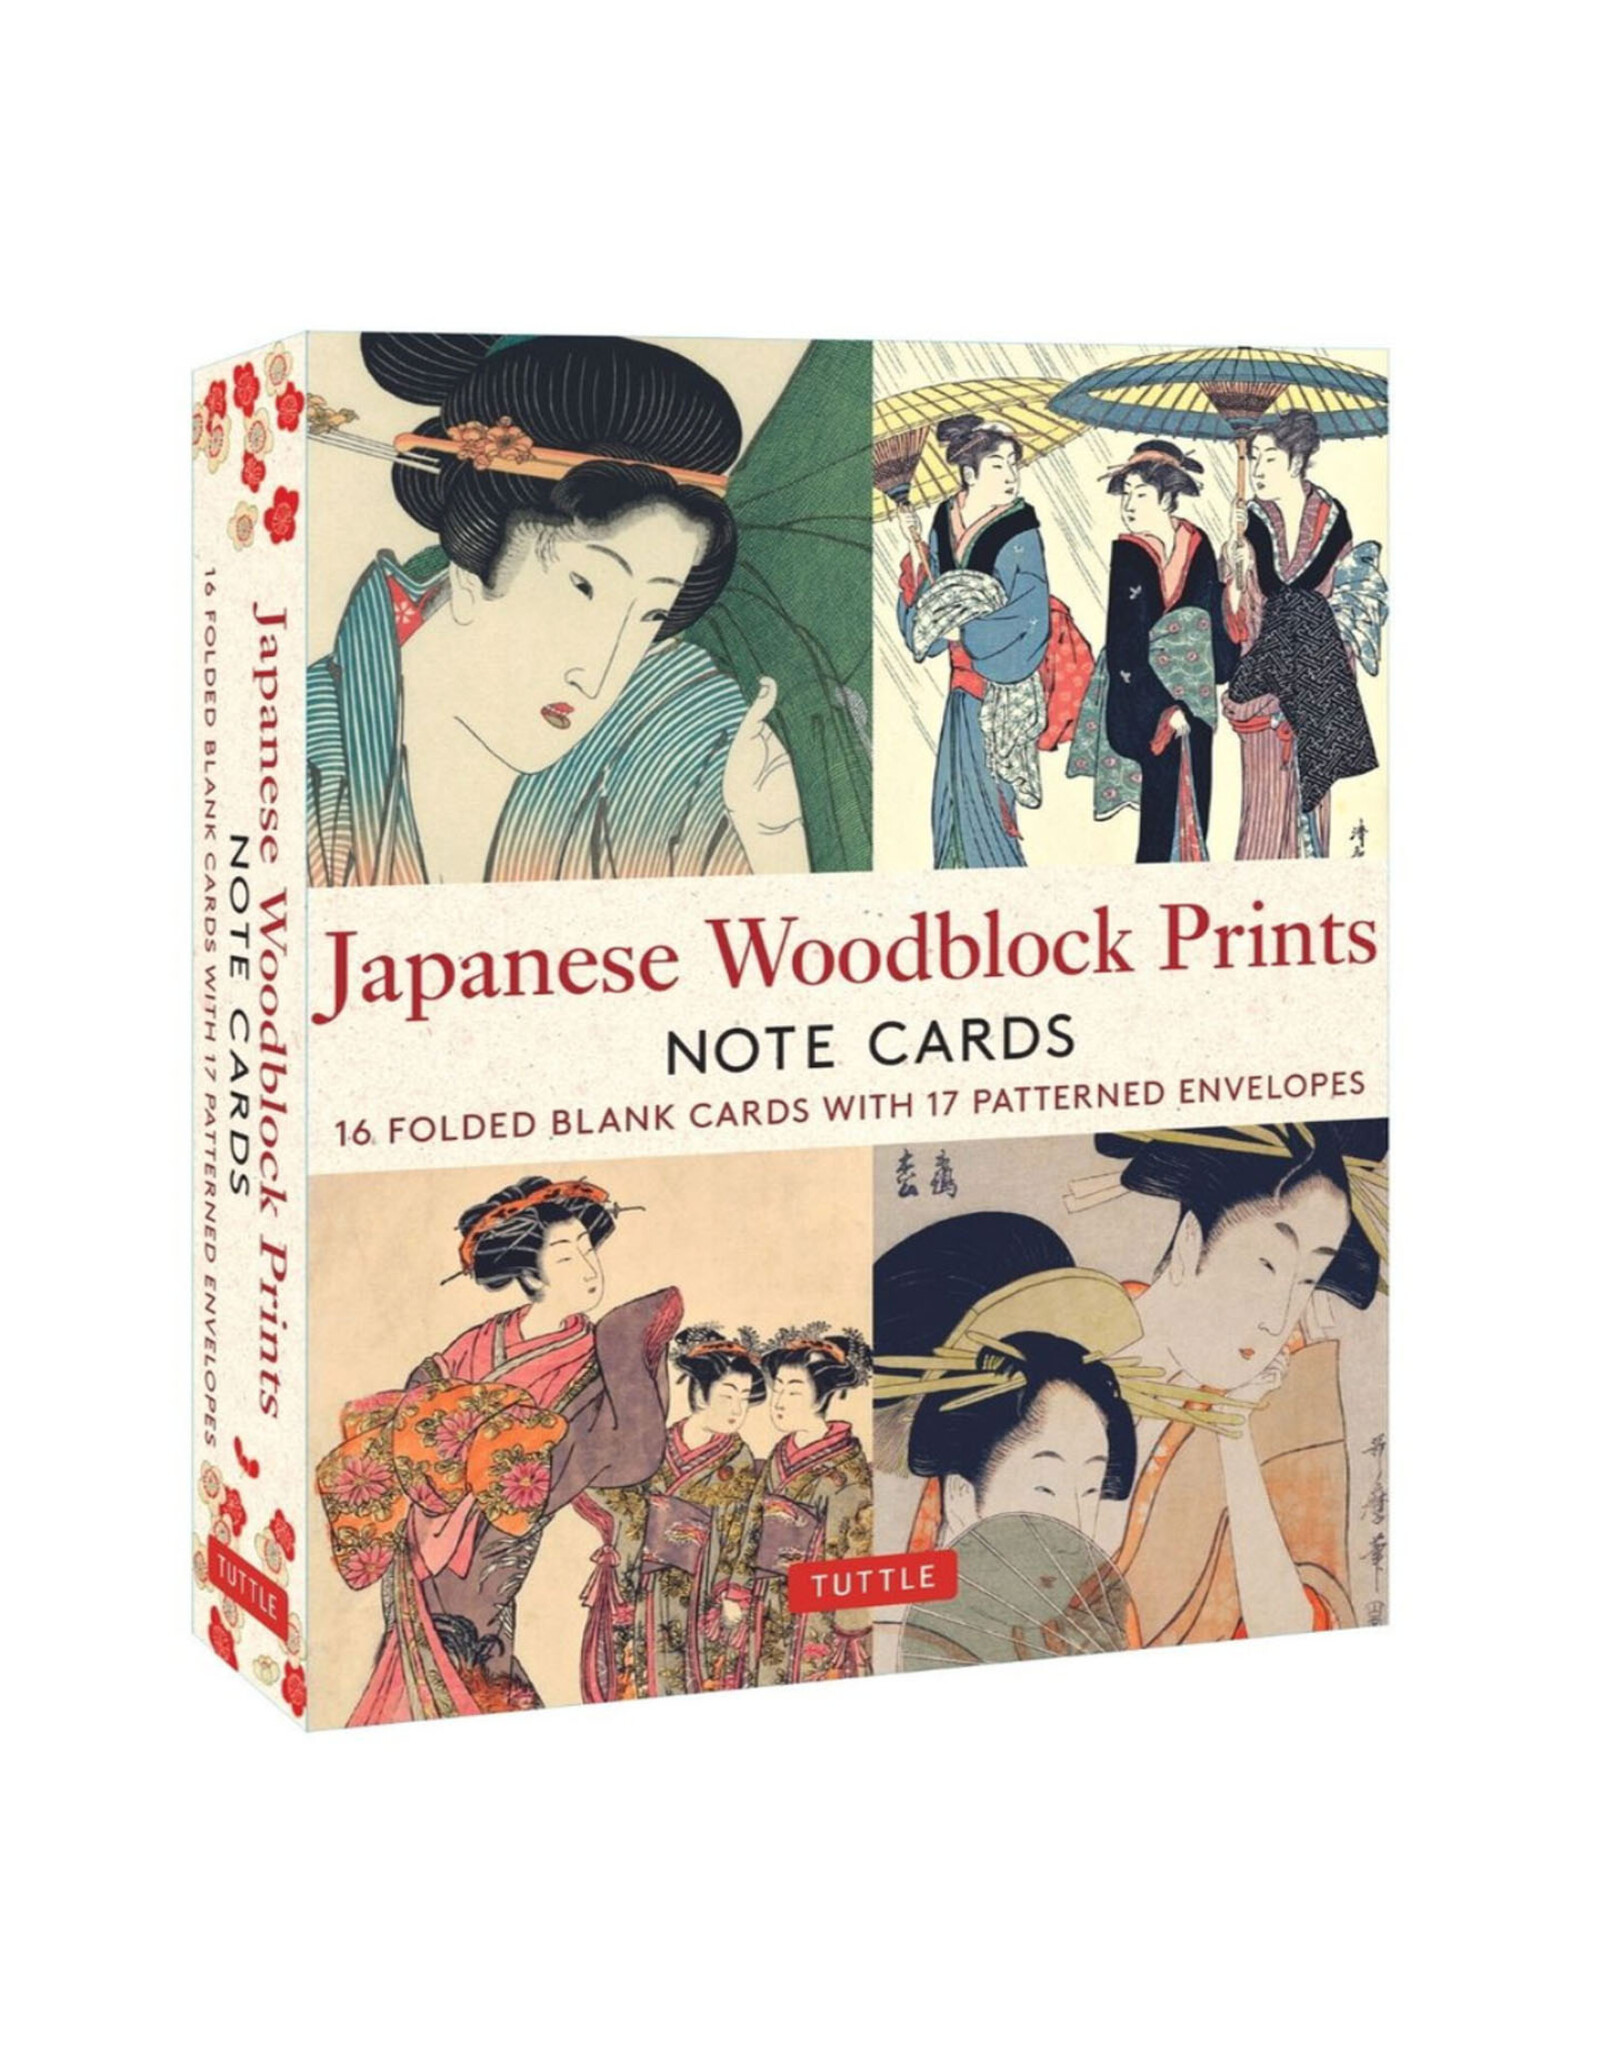 Japanese Woodblock Prints Notecard Set